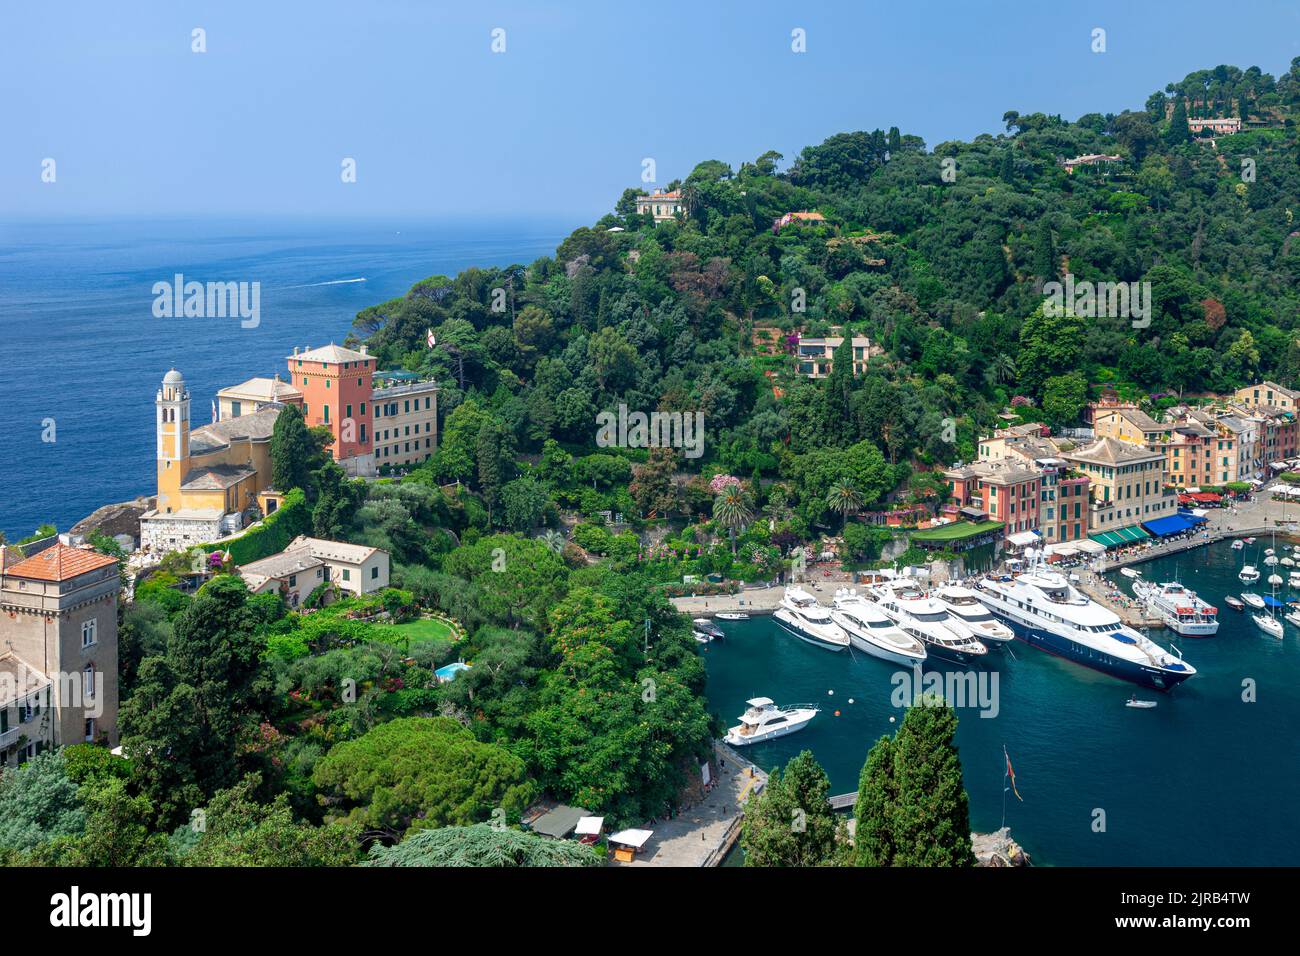 Chiesa San Giorgio, verde ladera y barcos de lujo amarrados en la pequeña ciudad portuaria de Portofino, Liguria, Italia Foto de stock